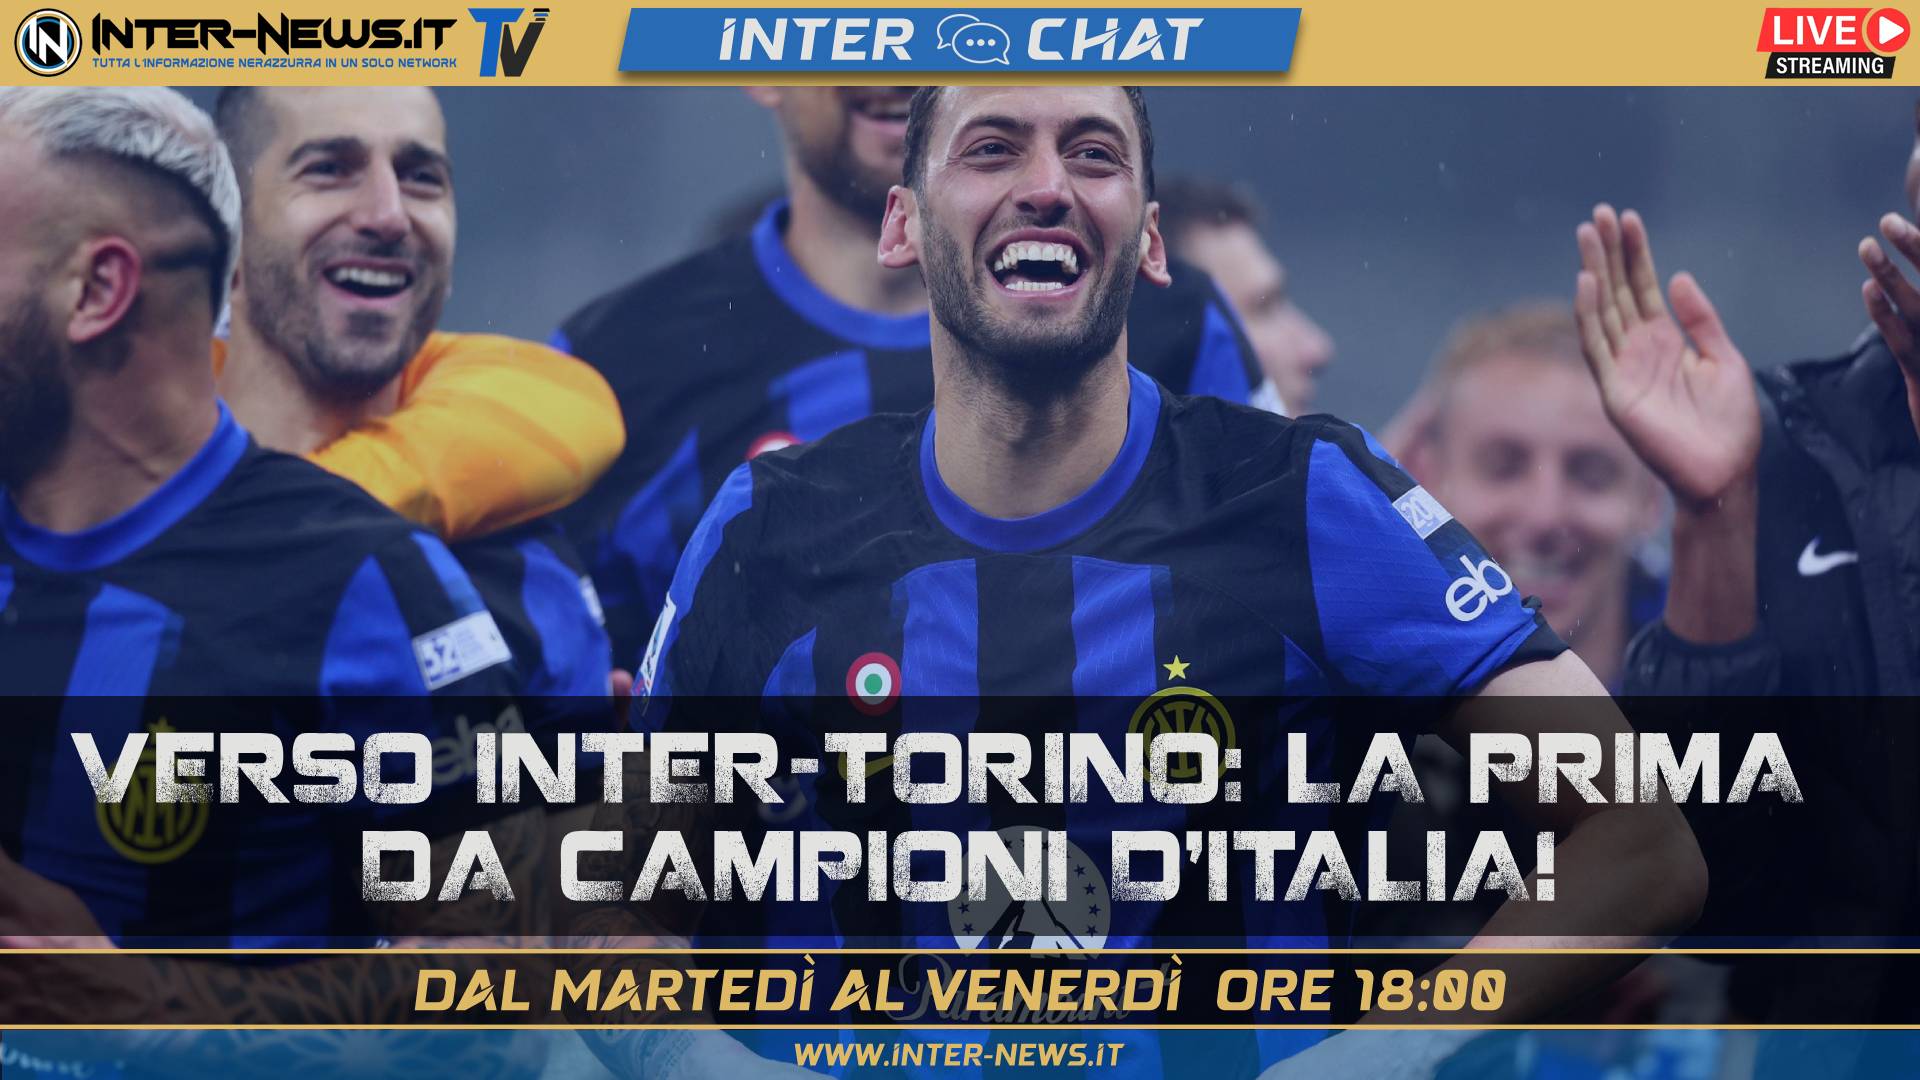 Inter Torino, la prima da Campioni d’Italia! Si torna in campo | Inter Chat LIVE